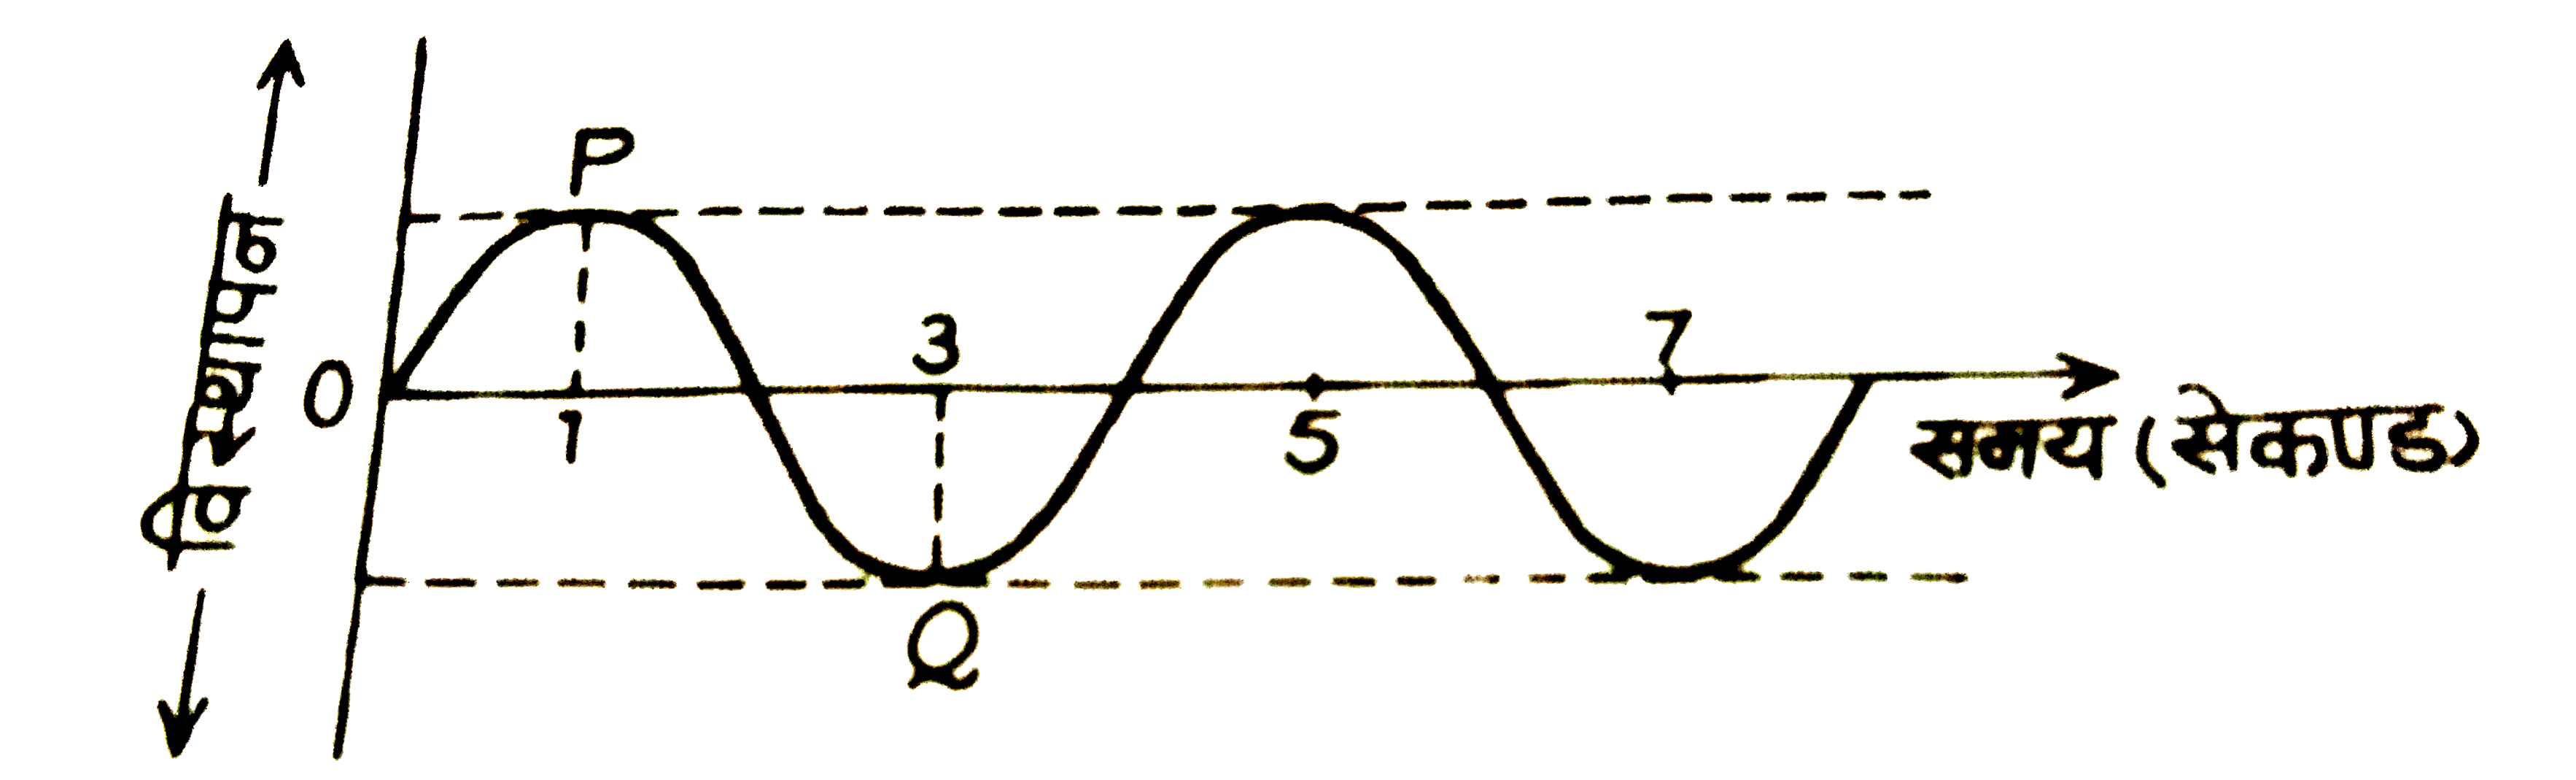 दिए गए चैत्र में तरंग का विस्थापन-समय ग्राफ दर्शाया गया है: इसमें (i) बिन्दुओ P और Q की कलाएँ क्या है ? (ii) तरंग का आवर्तकाल कितना है ?